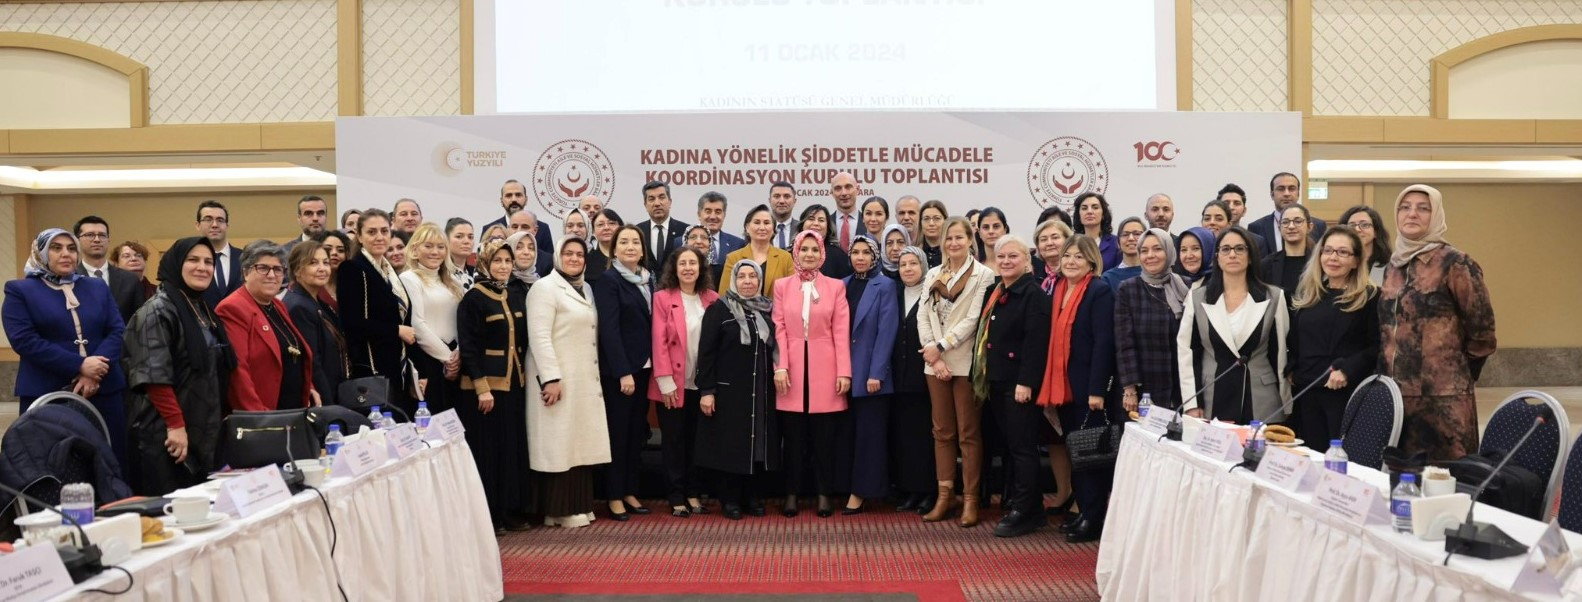 Kadına Yönelik Şiddetle Mücadele Koordinasyon Kurulu İlk Toplantısı'na Katılım Sağlandı